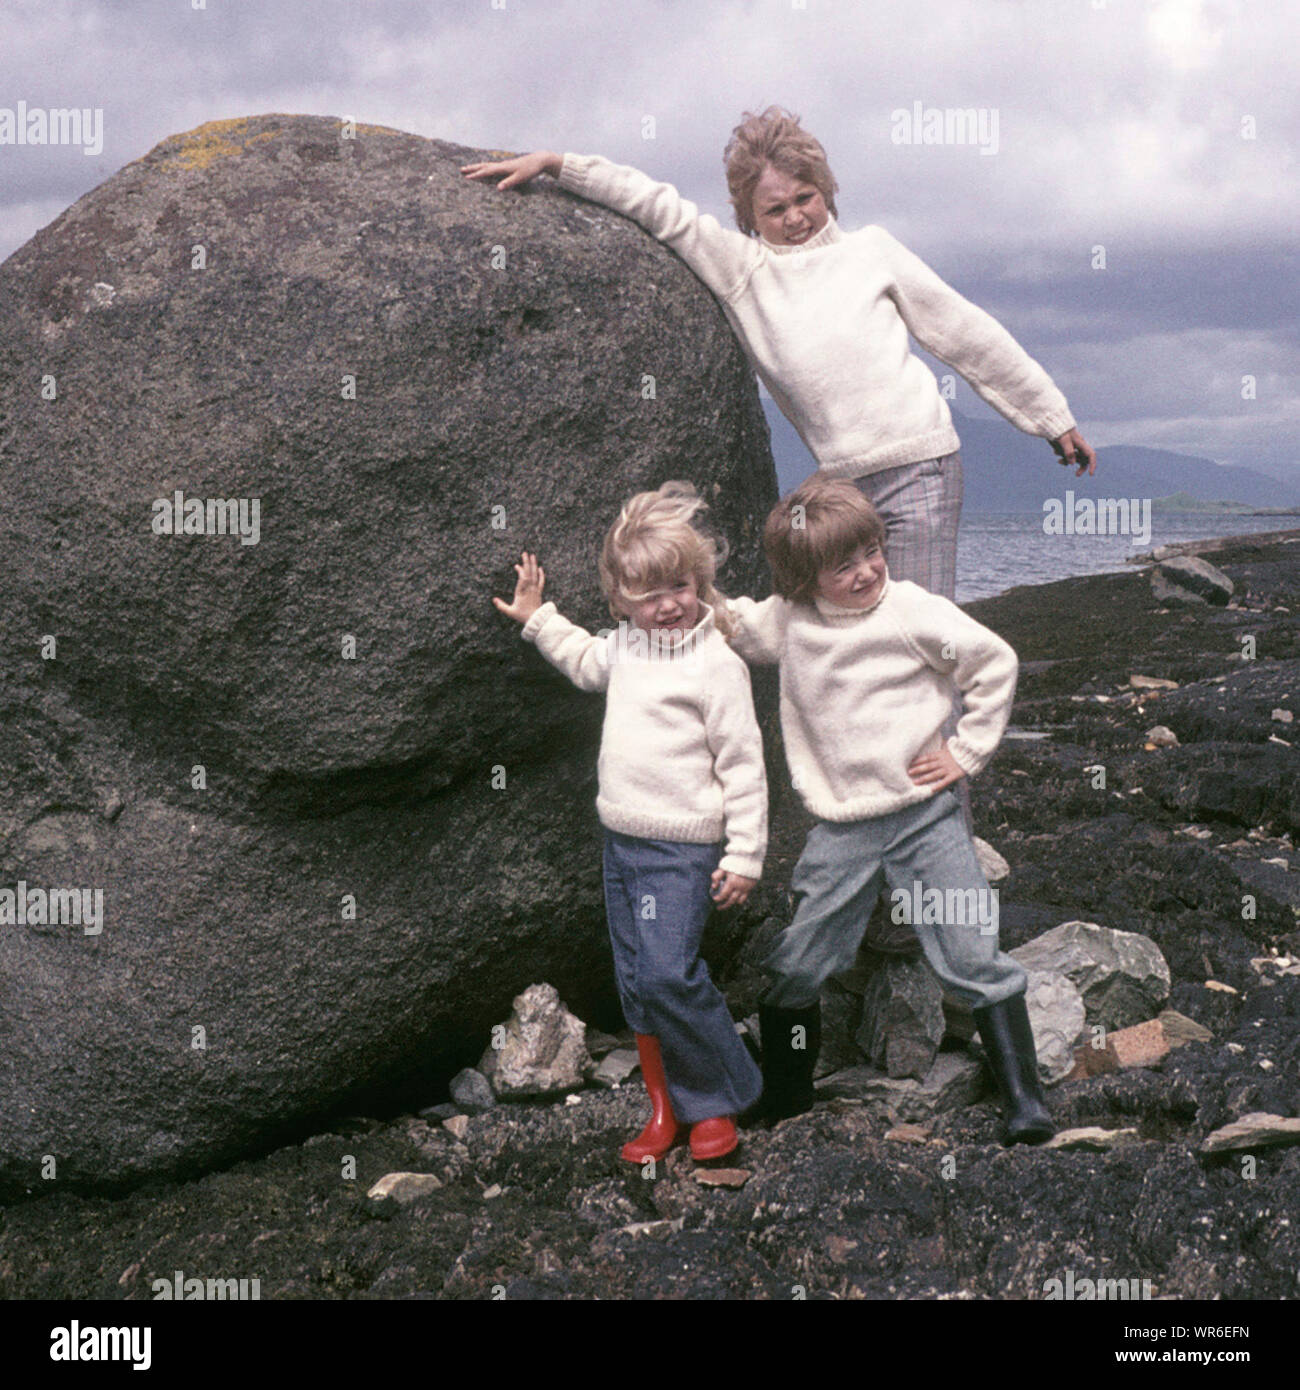 Historisches Archiv 1970s Familienurlaub in Schottland drei Kinder Pose trägt 70s passende Aran Mode Pullover versuchen zu schieben boulder neben dem kalten windigen loch, wie wir in Scottish waren Highlands Großbritannien Stockfoto